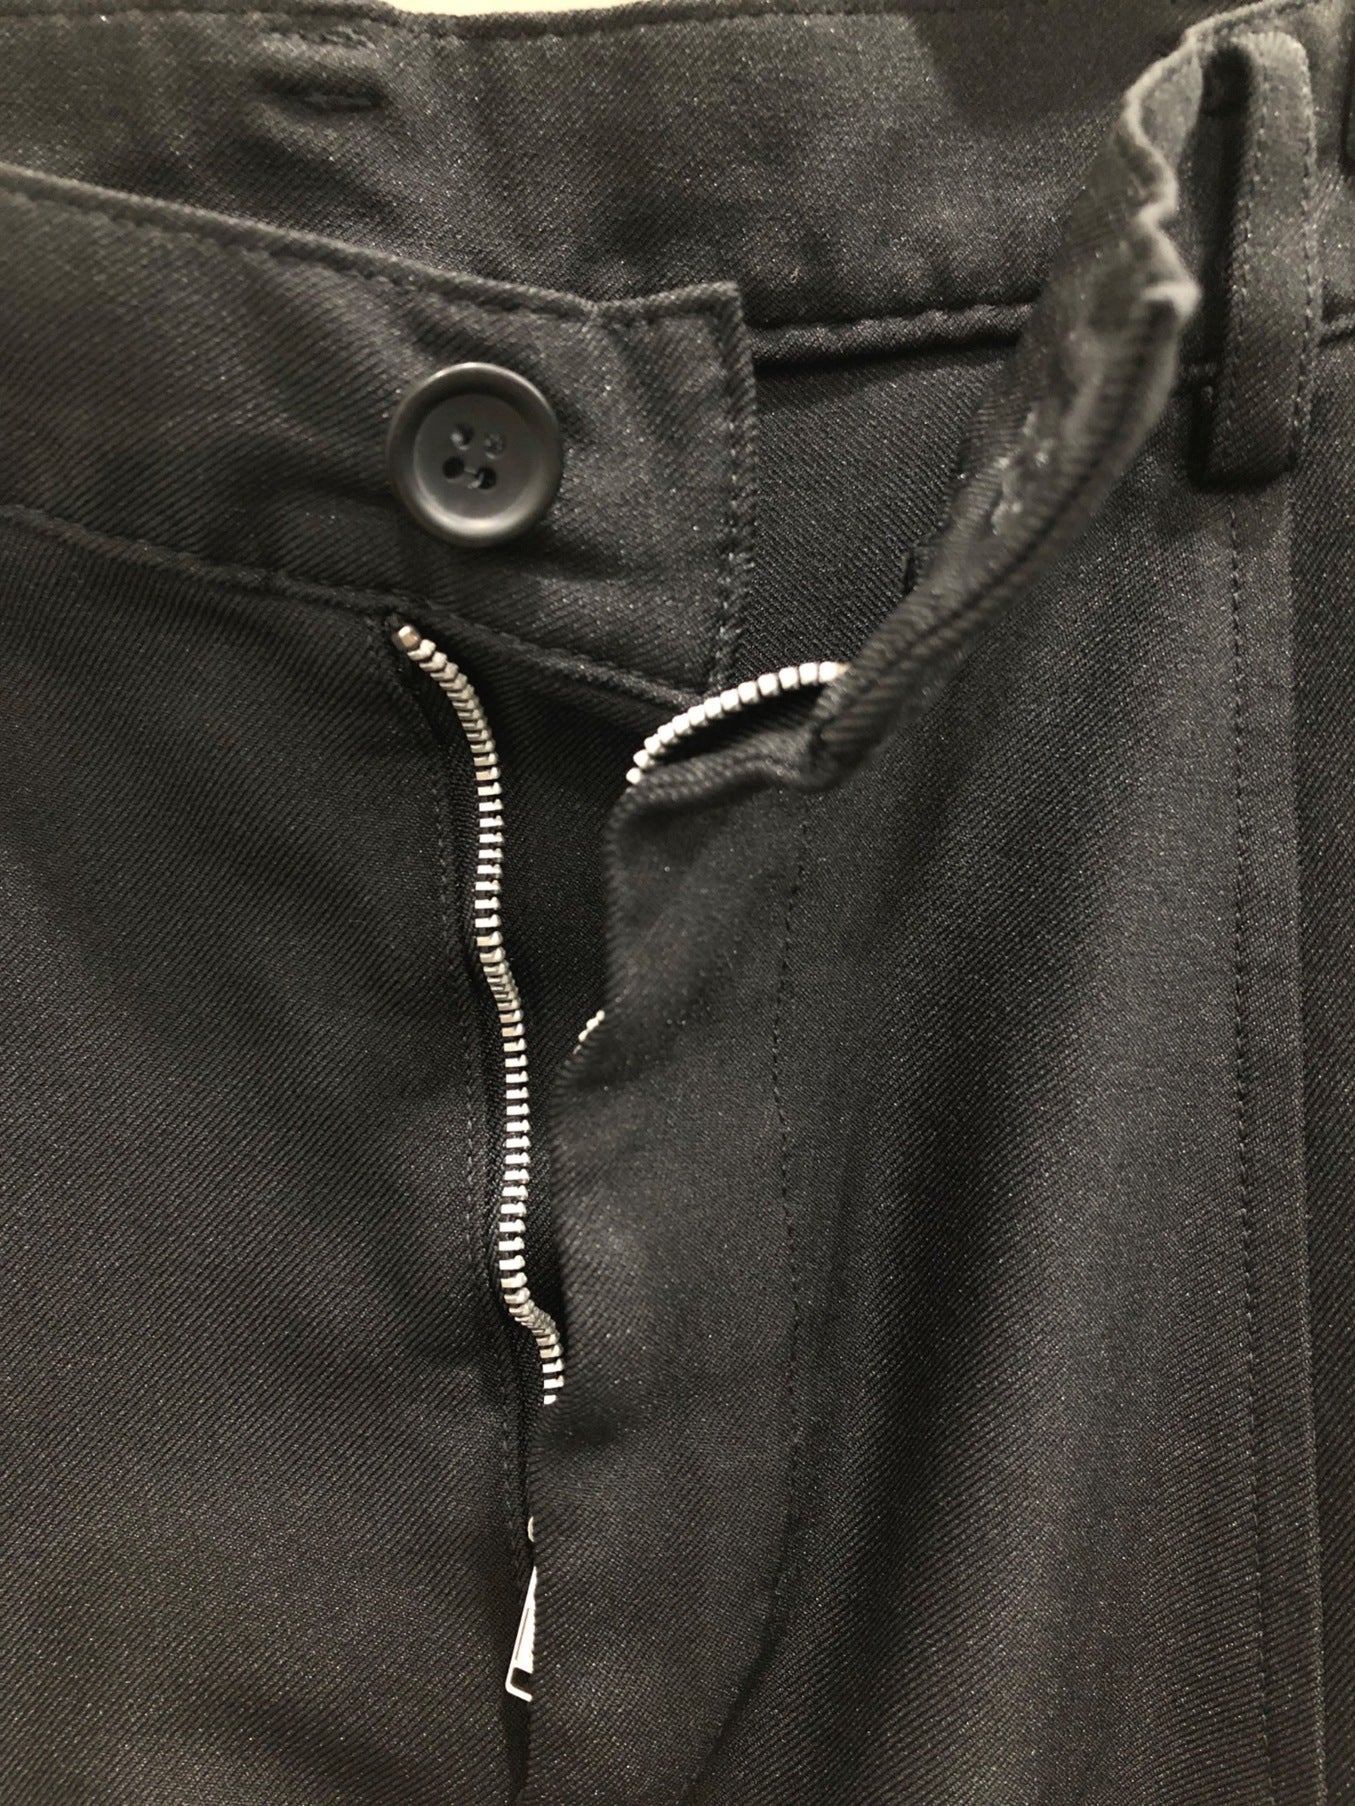 [Pre-owned] BLACK COMME des GARCONS sarouel pants 1M-P021